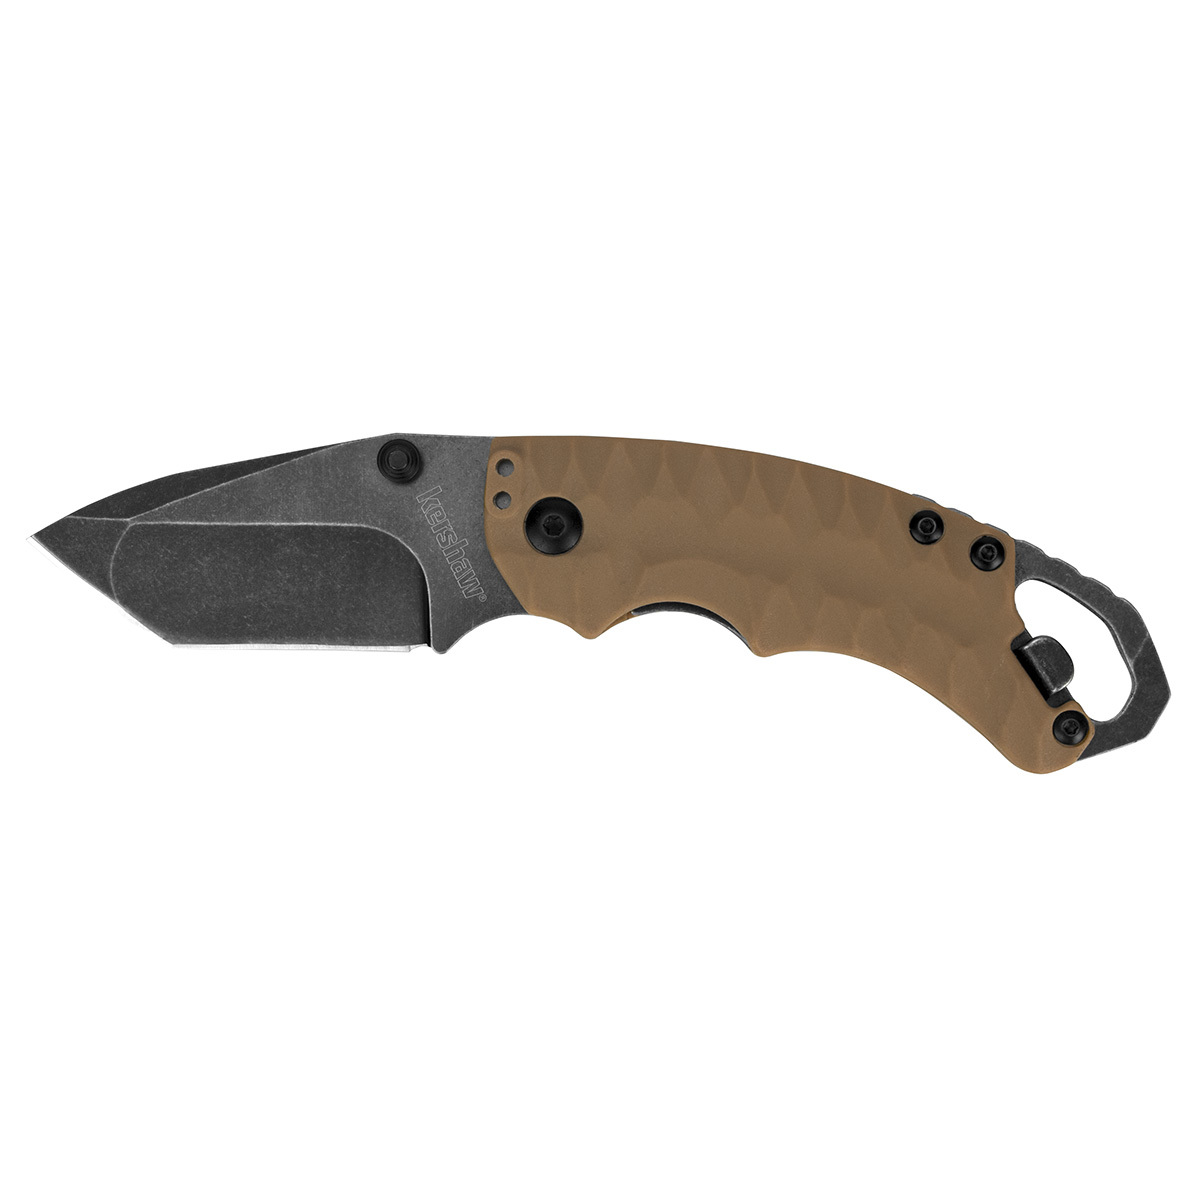 Нож складной Shuffle II - KERSHAW 8750TTANBW, сталь 8Cr13MoV c покрытием BlackWash™, рукоять термопластик GFN коричневого цвета